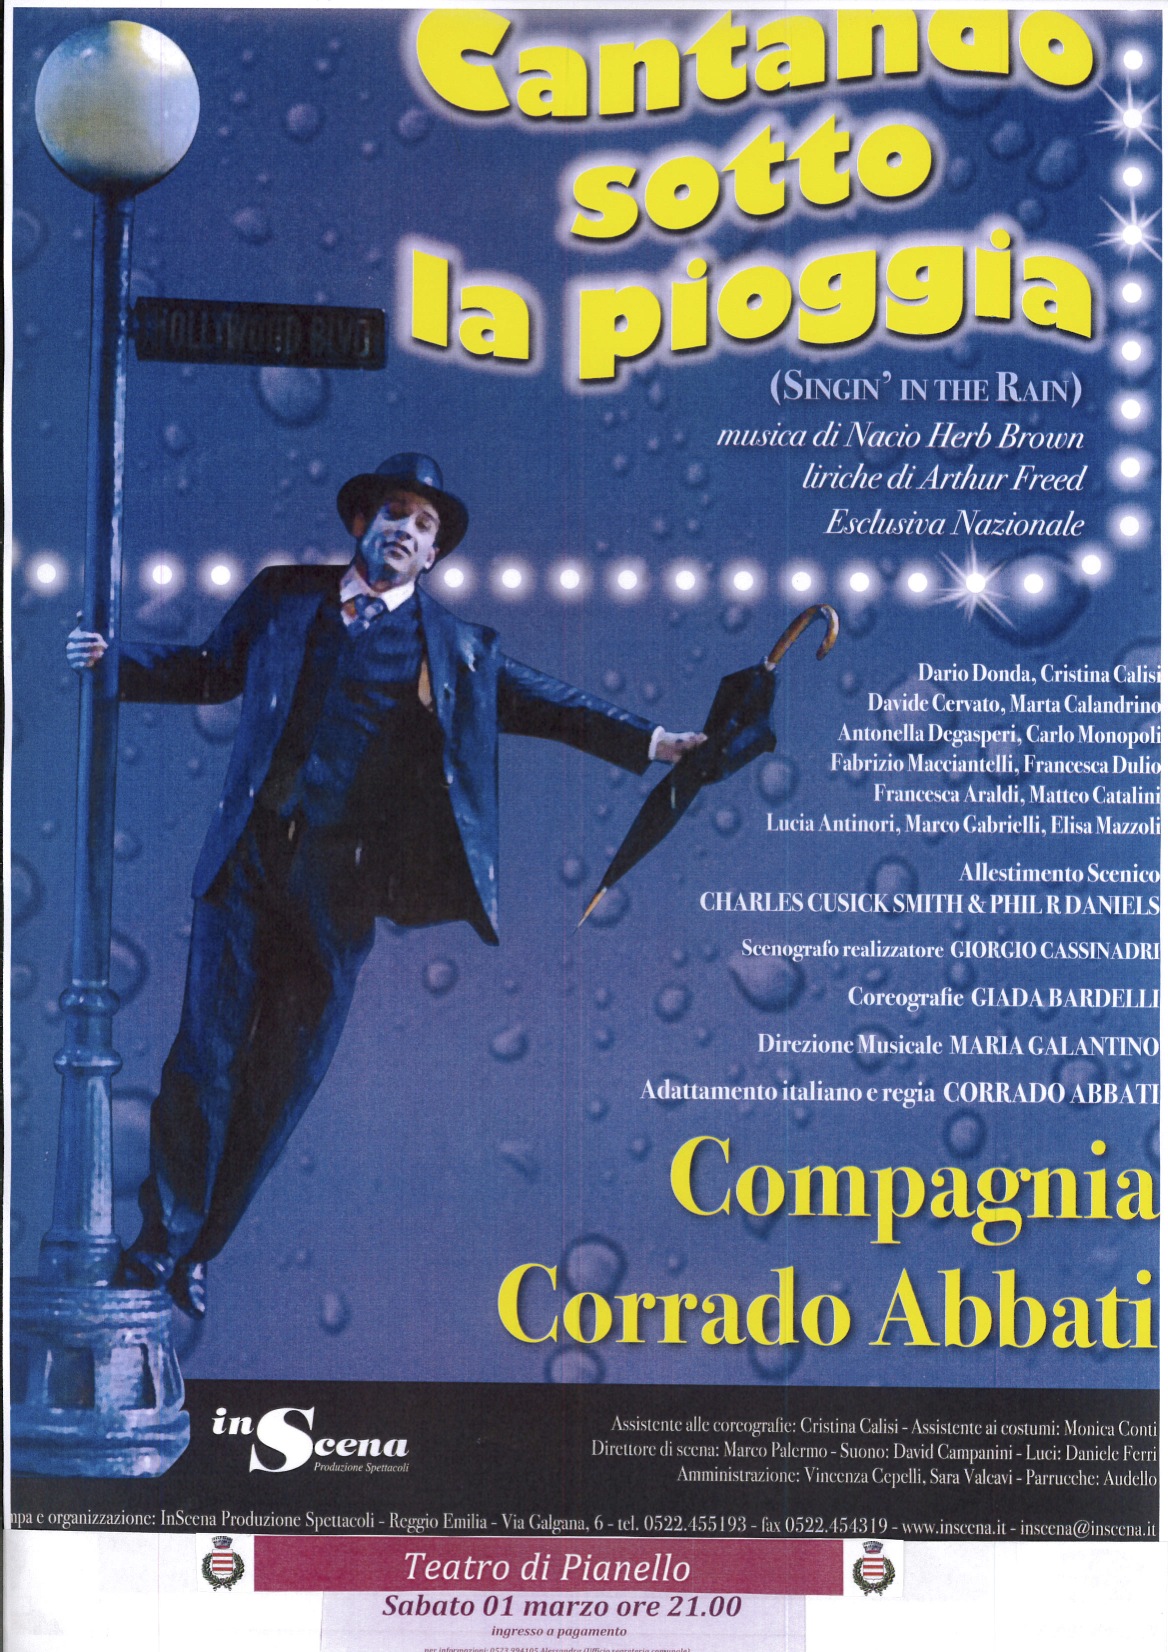 Pianello Val Tidone, Nuovo Teatro, la compagnia di Corrado Abbati